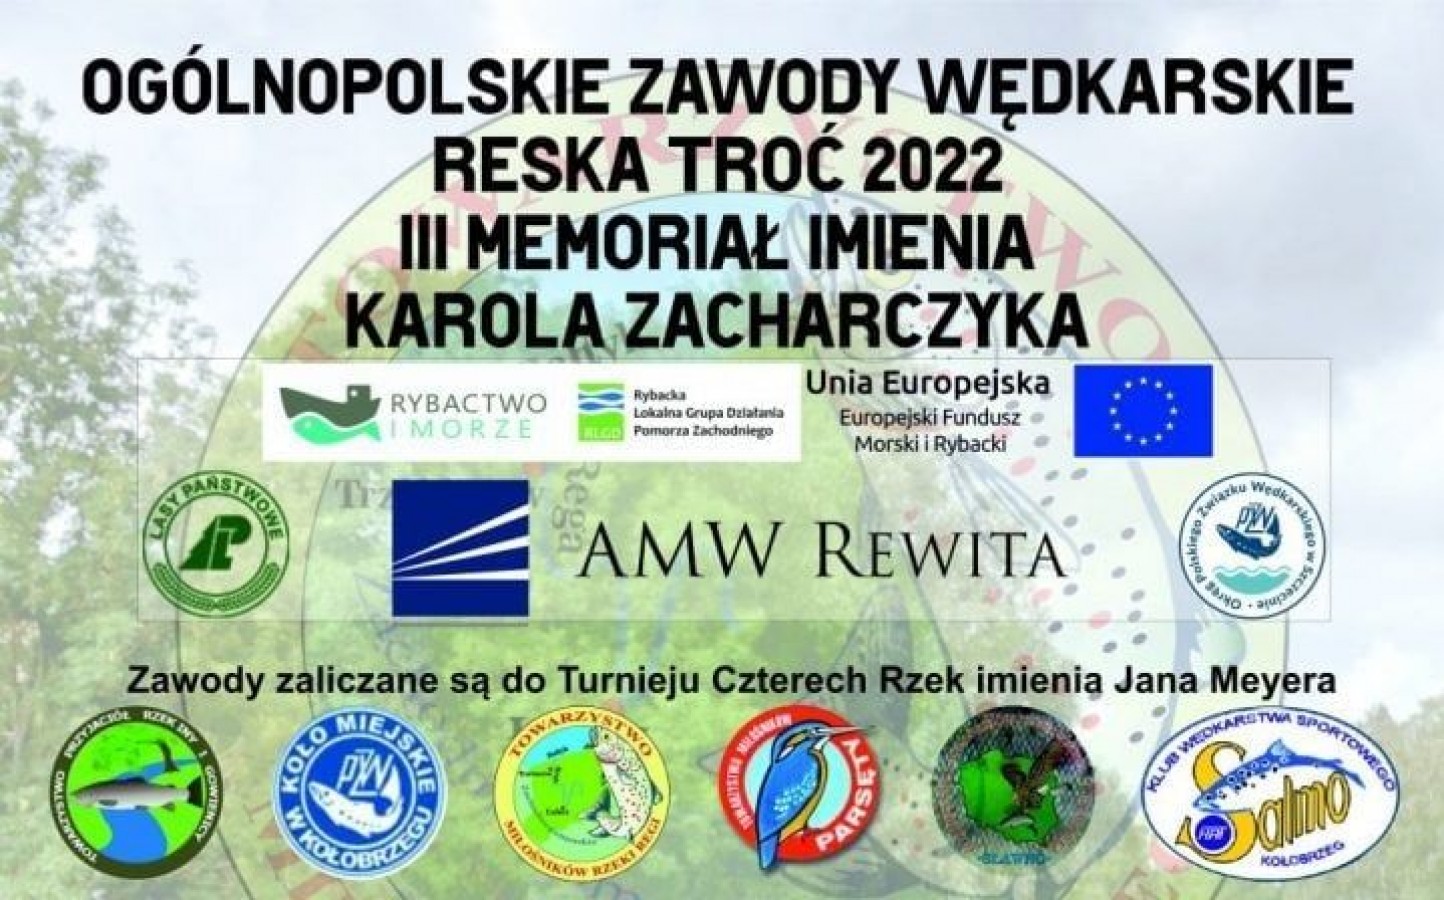 Ogólnopolskie Zawody Wędkarskie Reska Troć 2022 III Memoriał imienia Karola Zacharczyka